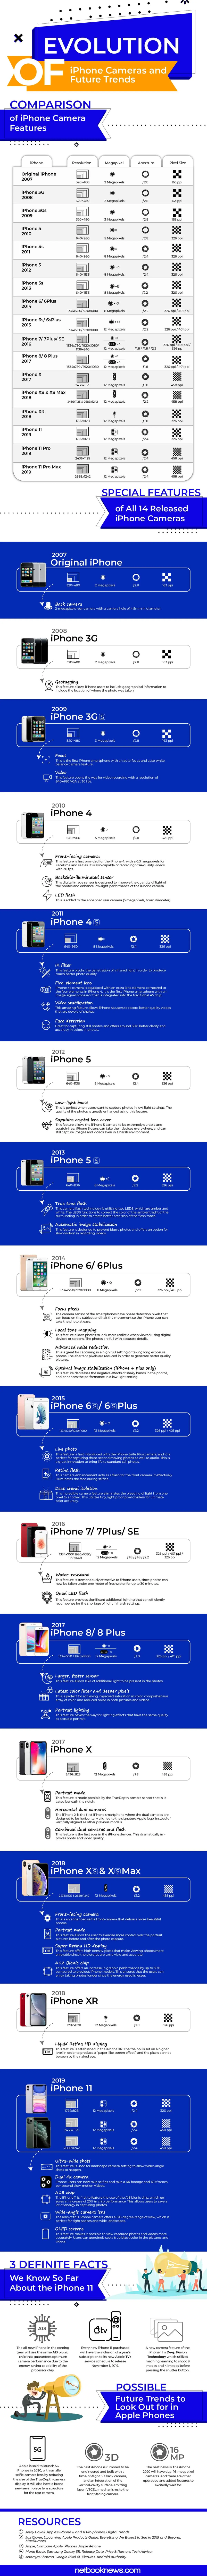 iphone camera evolutiono infographic v3